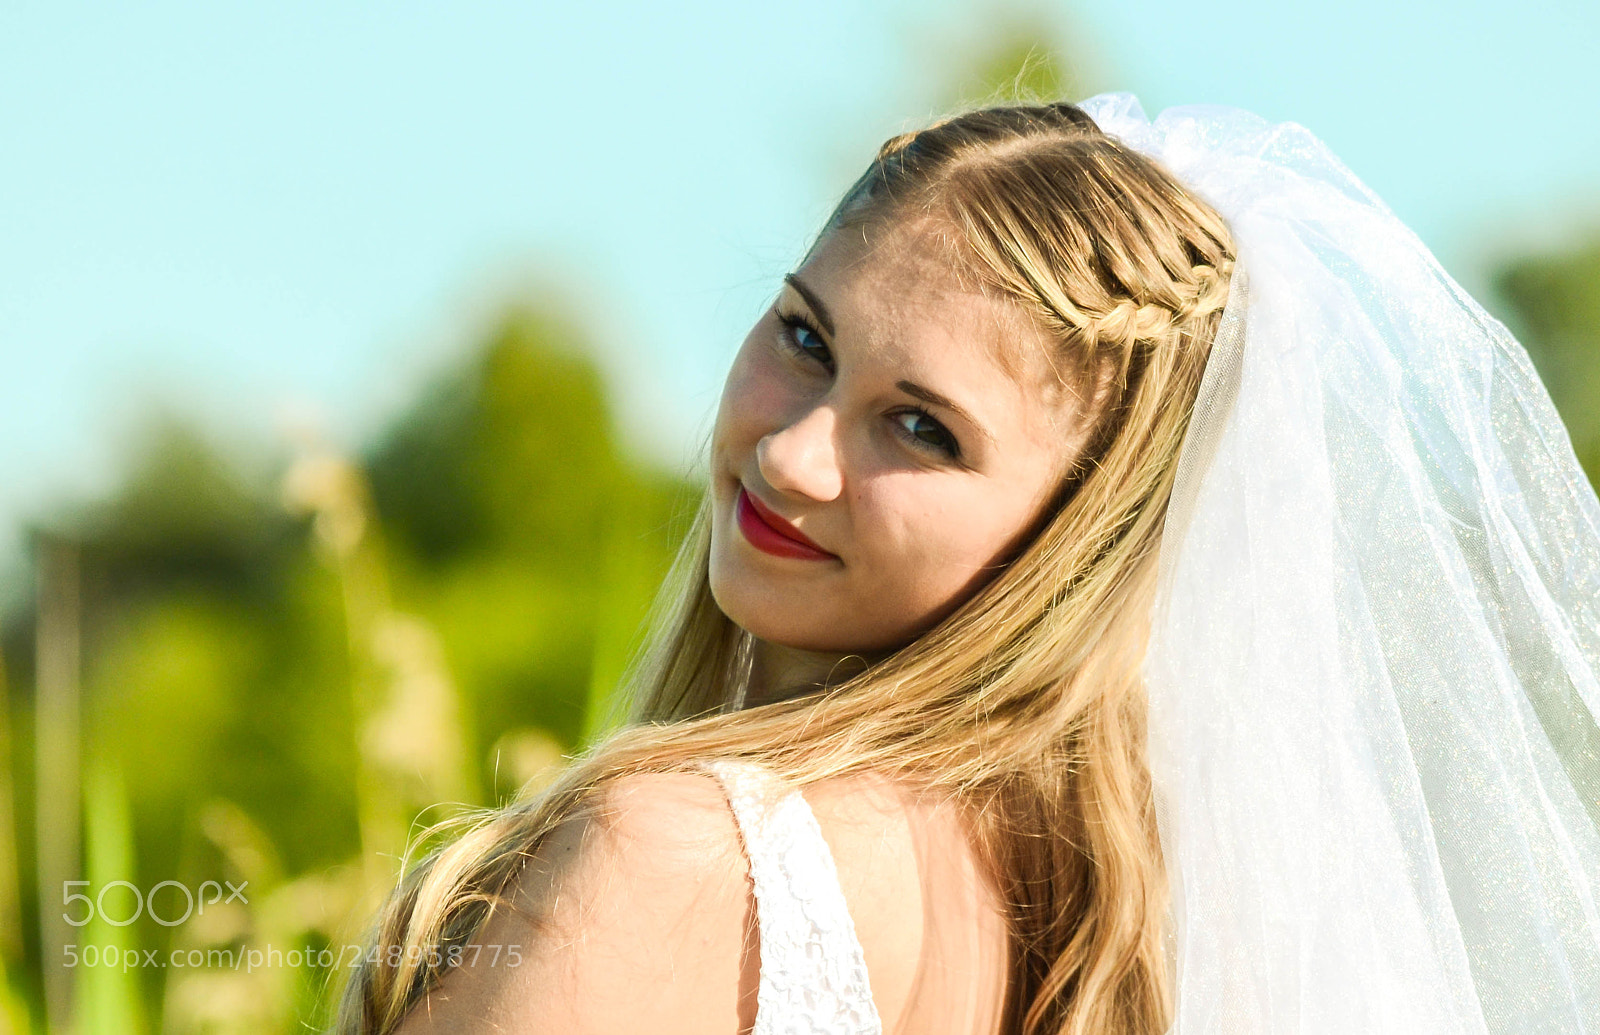 Nikon D5100 sample photo. Bride portrait photography